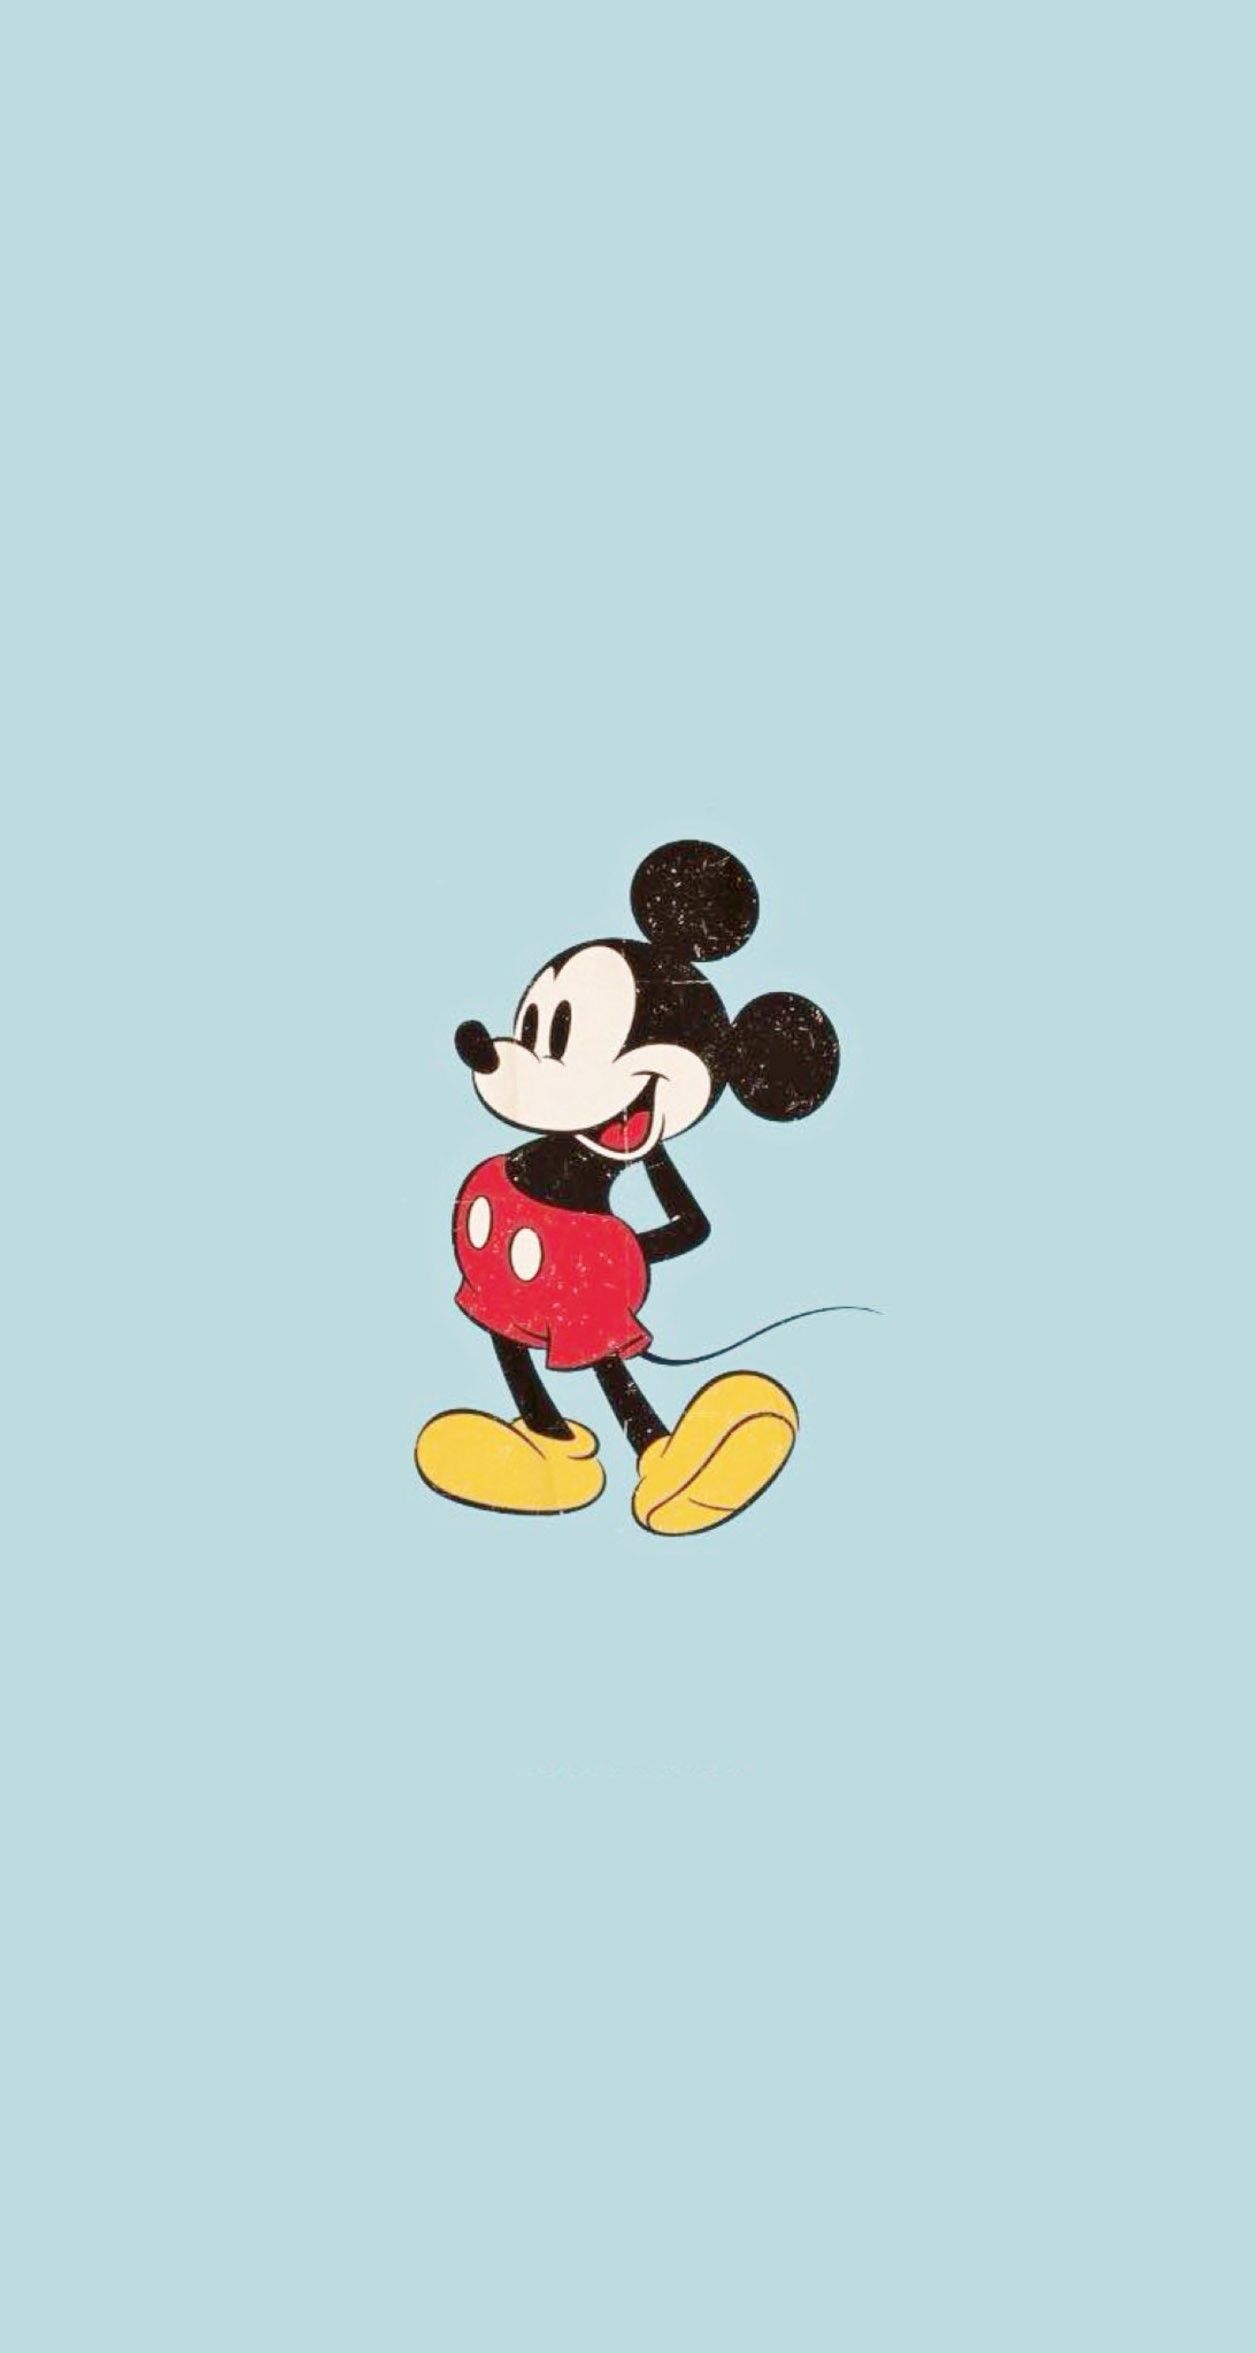 Fondos de pantalla de Mickey Mouse - FondosMil